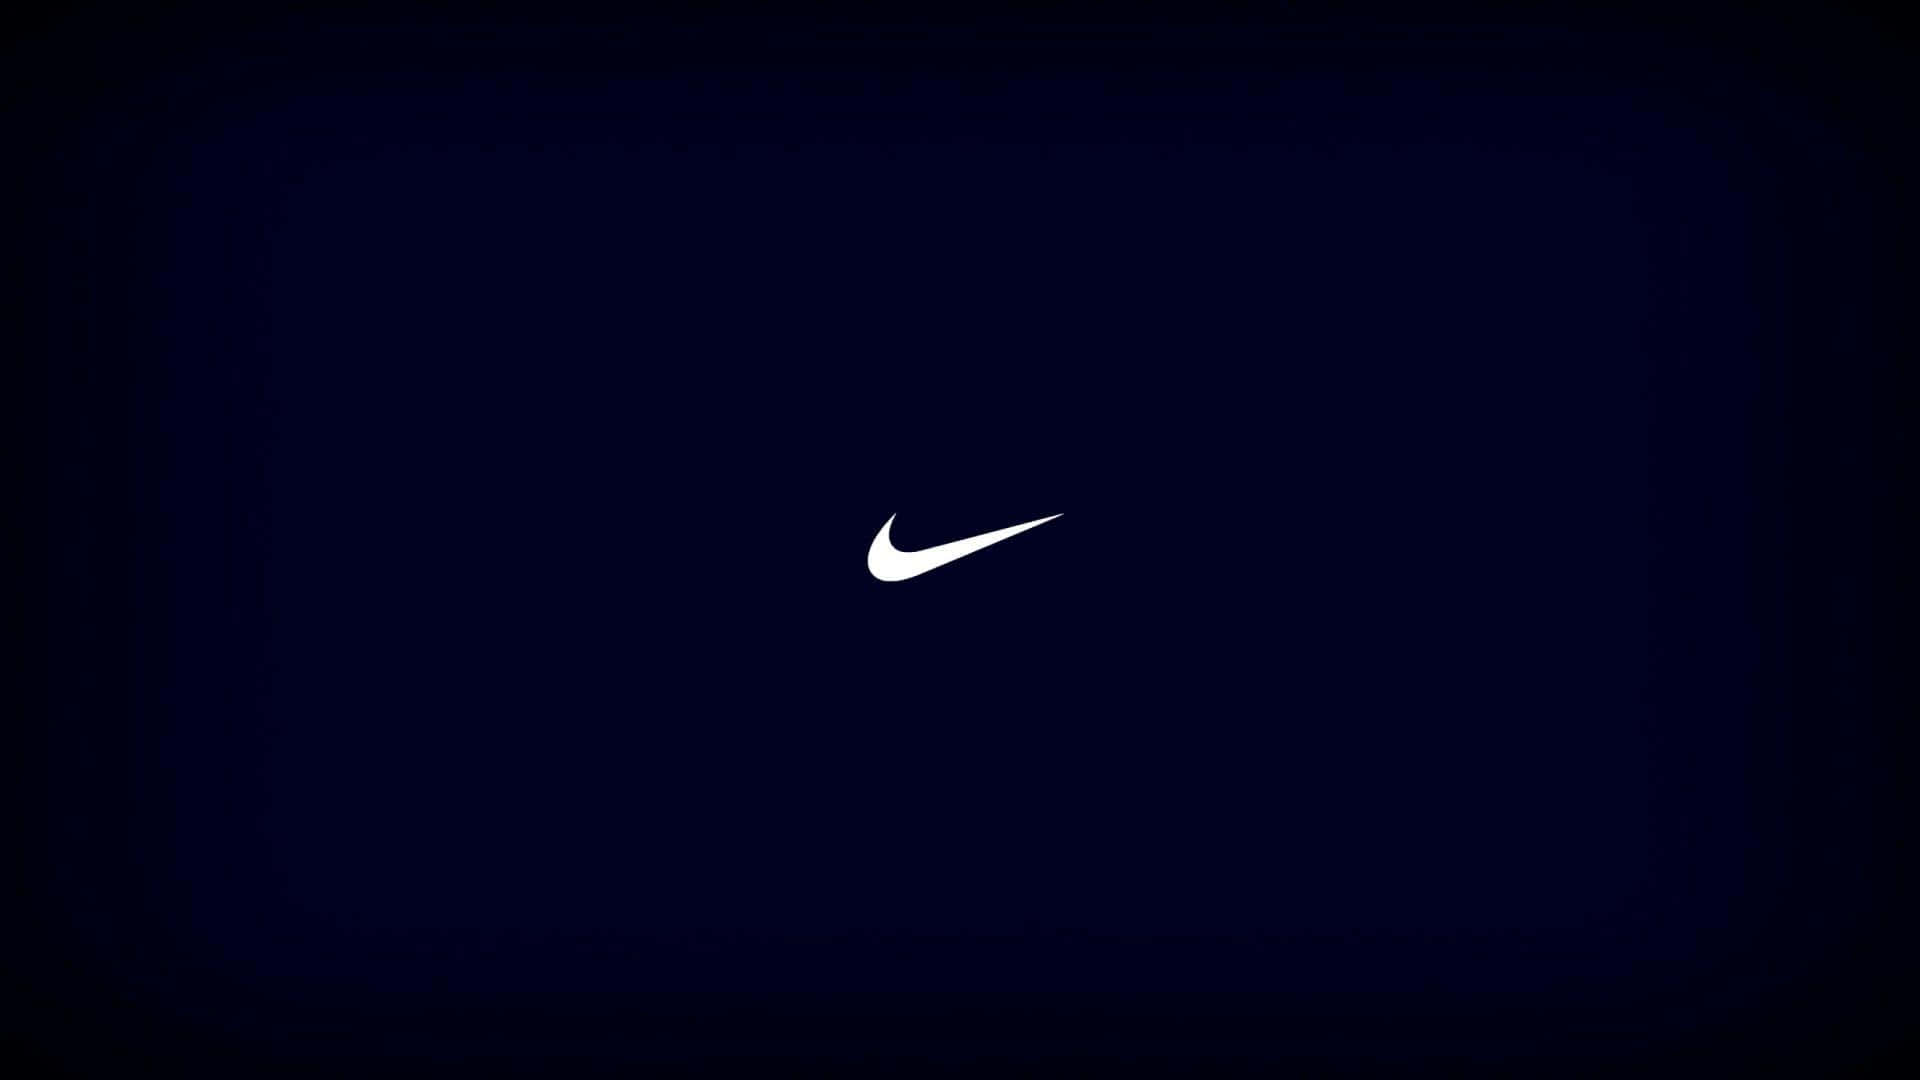 Nike Logo 1920 X 1080 Wallpaper